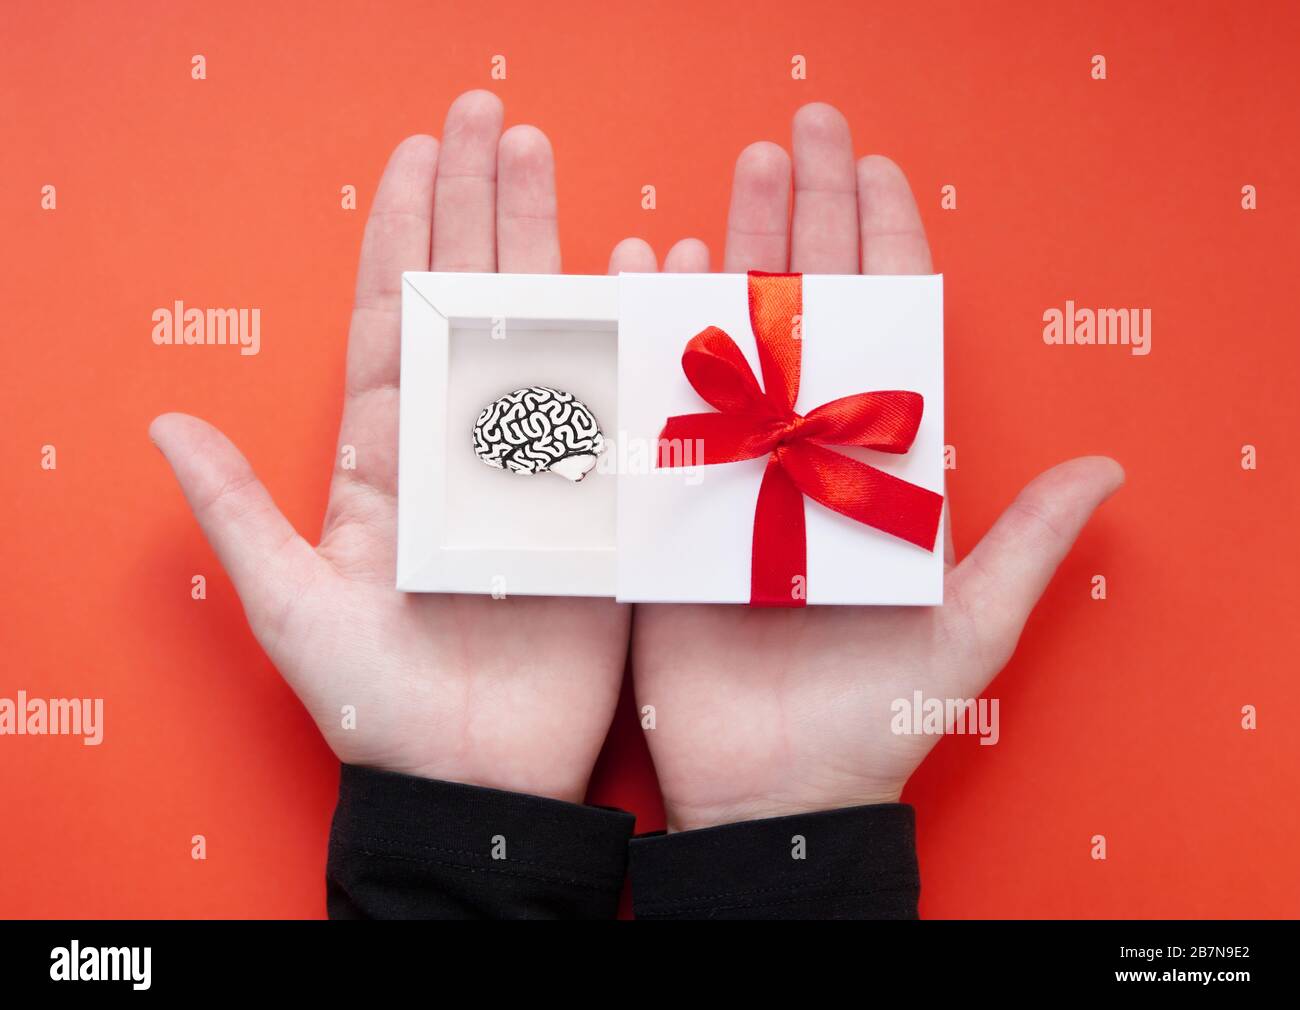 Mani femminili che tengono una scatola regalo bianca aperta con un modello in acciaio di un cervello umano all'interno e un nastro rosso sulla copertura. Concetto creativo attuale. Foto Stock